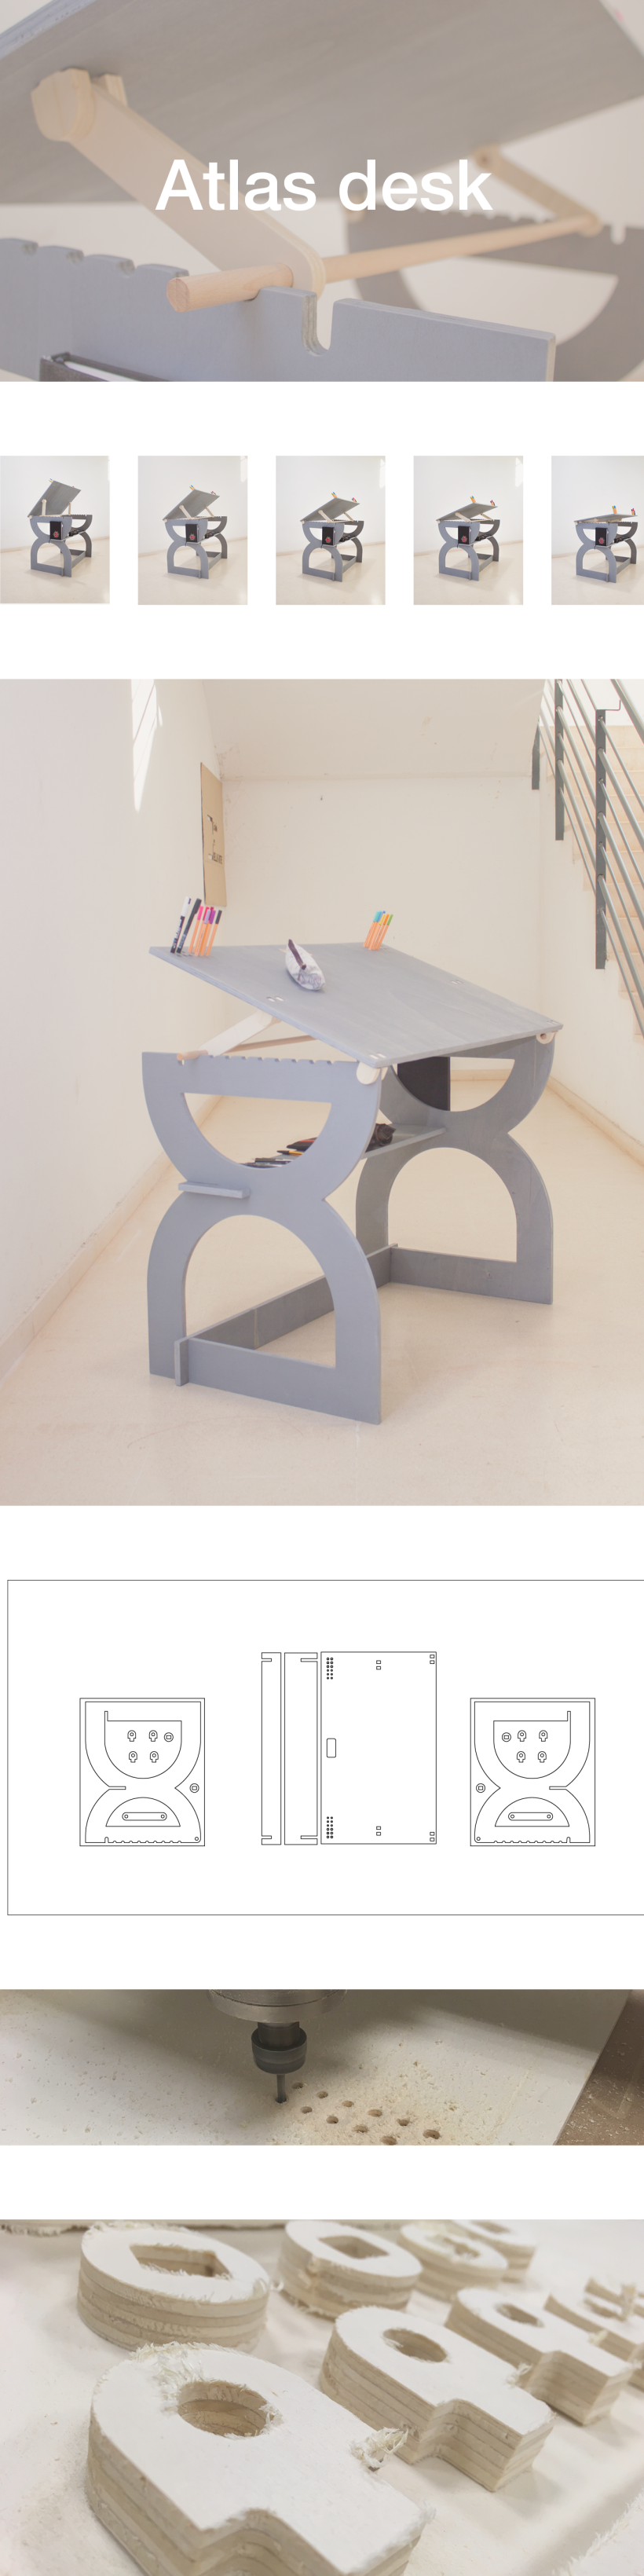 Escritorio Atlas / Diseño de mobiliario y corte CNC 1